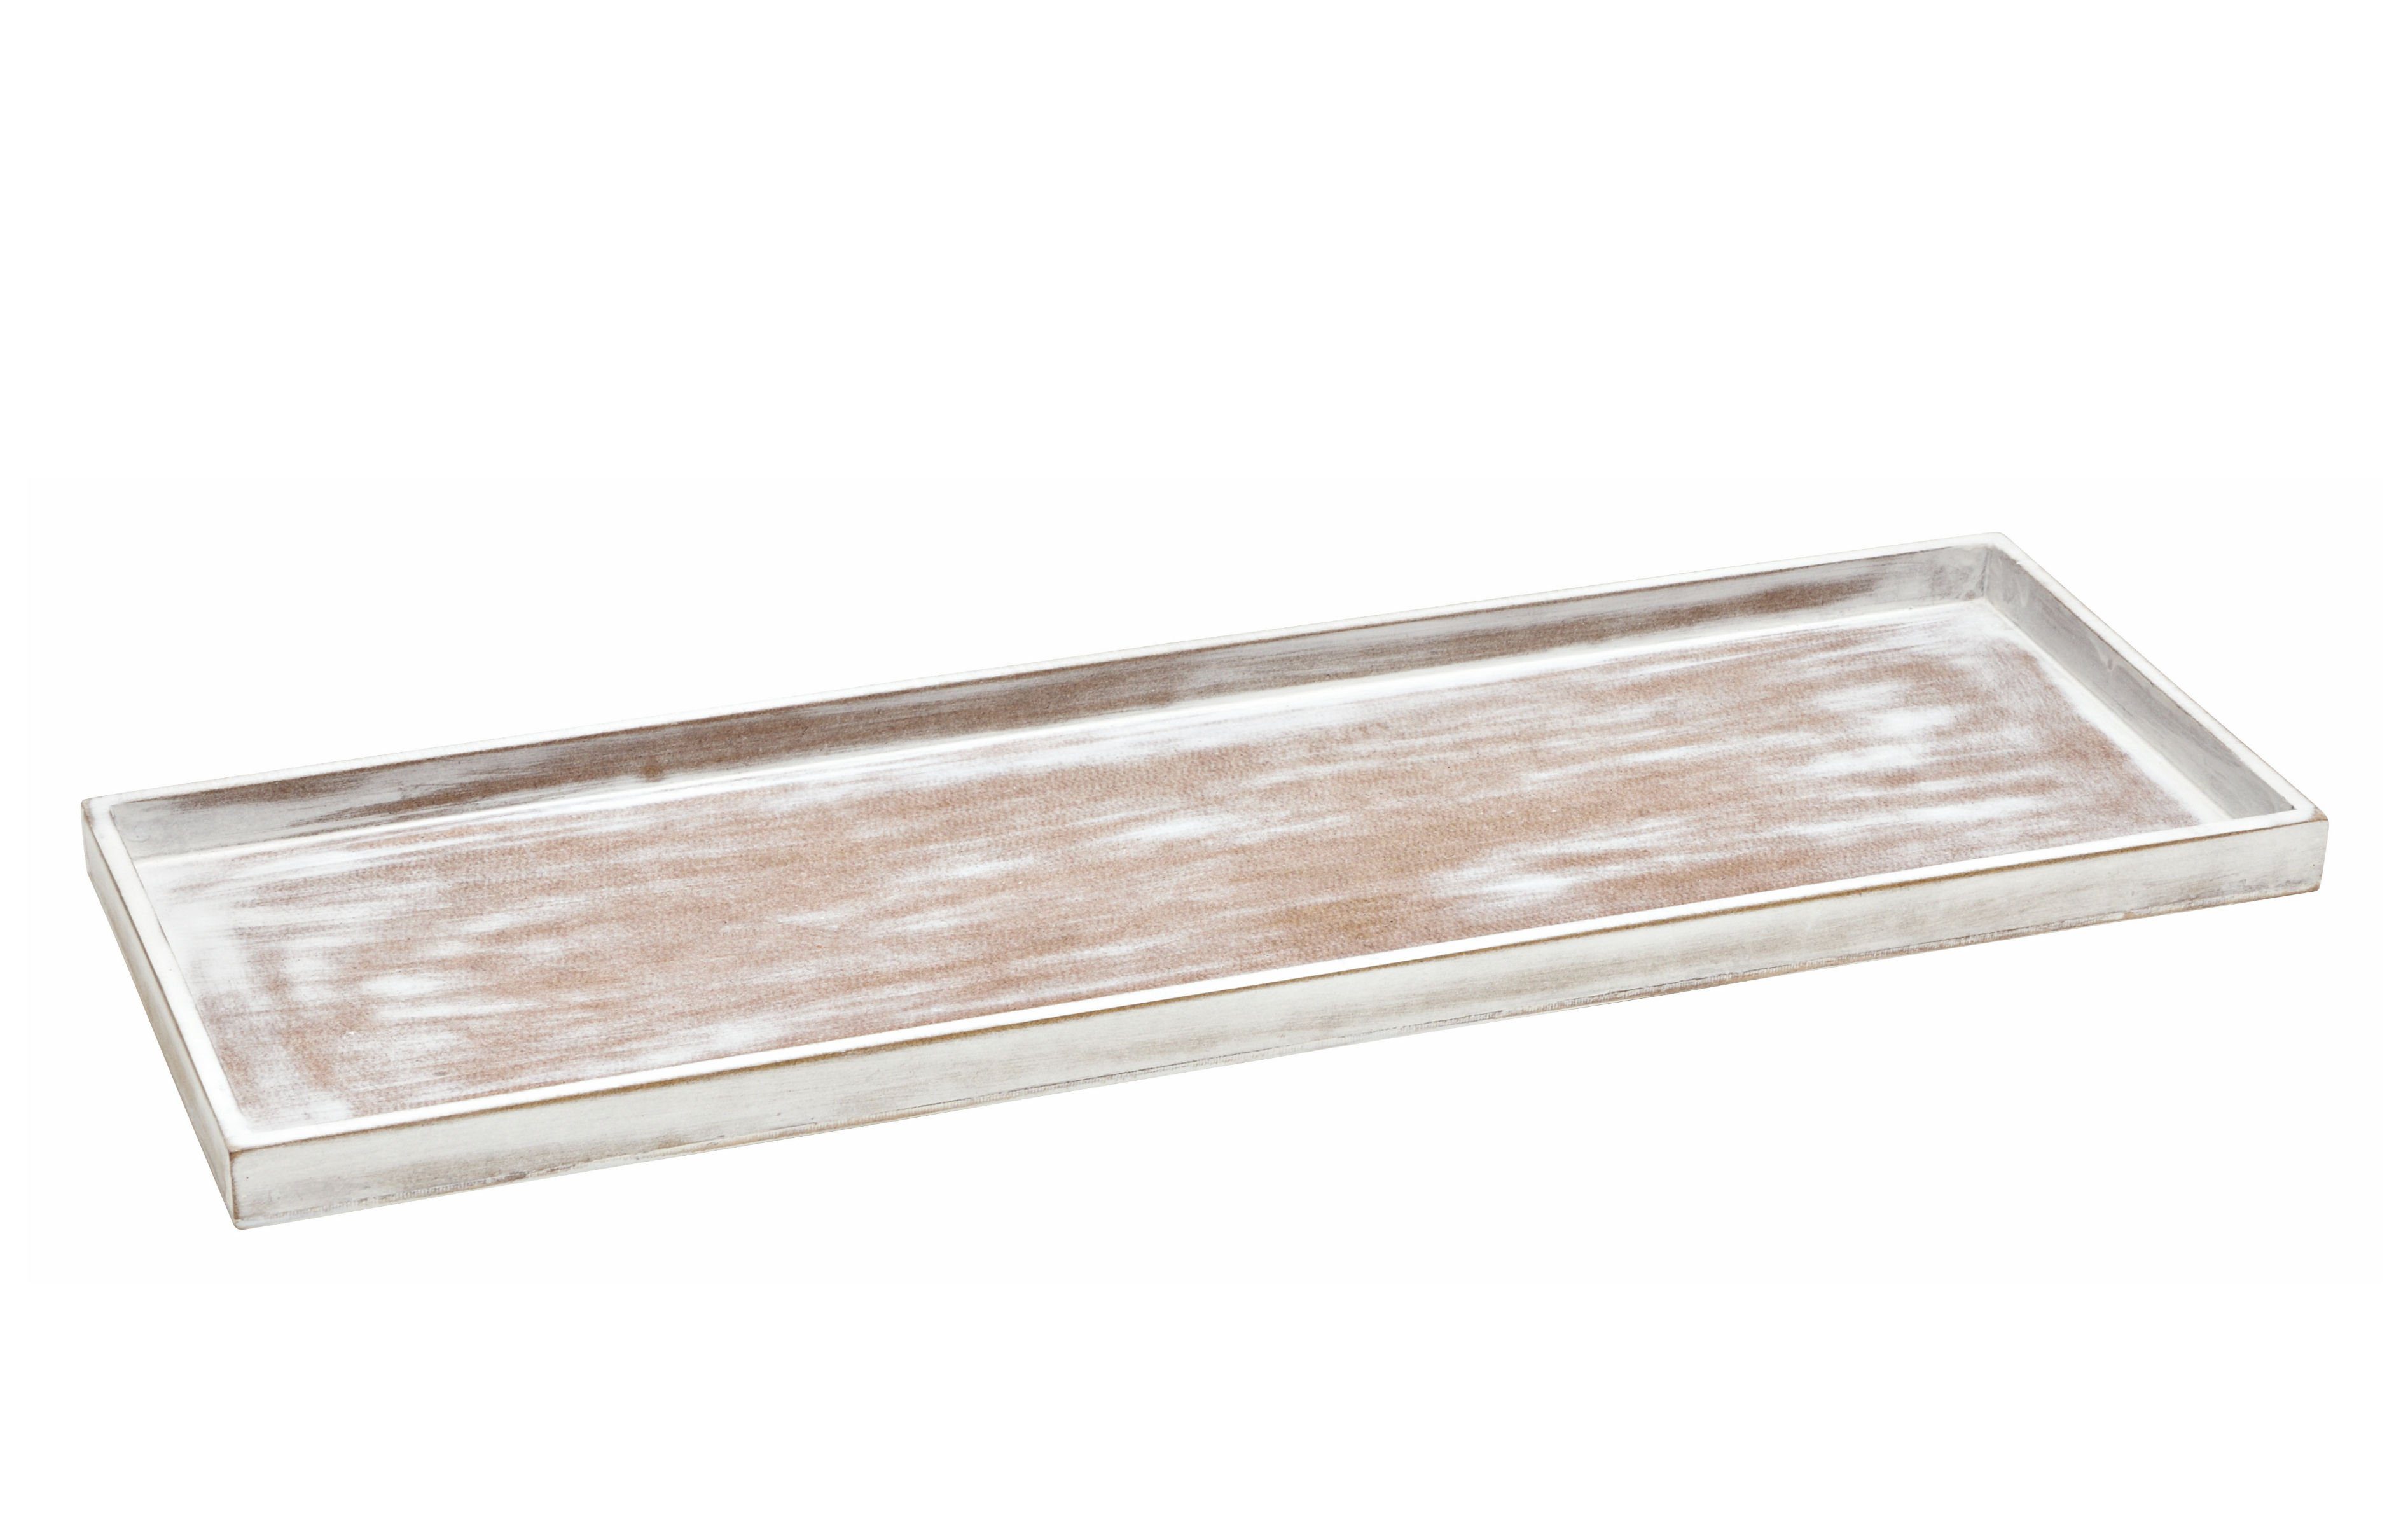 Spetebo Kerzentablett Vintage Holz Tablett shabby weiß - 50 x 17 cm (Stück, 1 St., Deko Tablett), Vintage Tischdeko eckig - Deko Brett für Weihnachten Gestecke Hochzeit